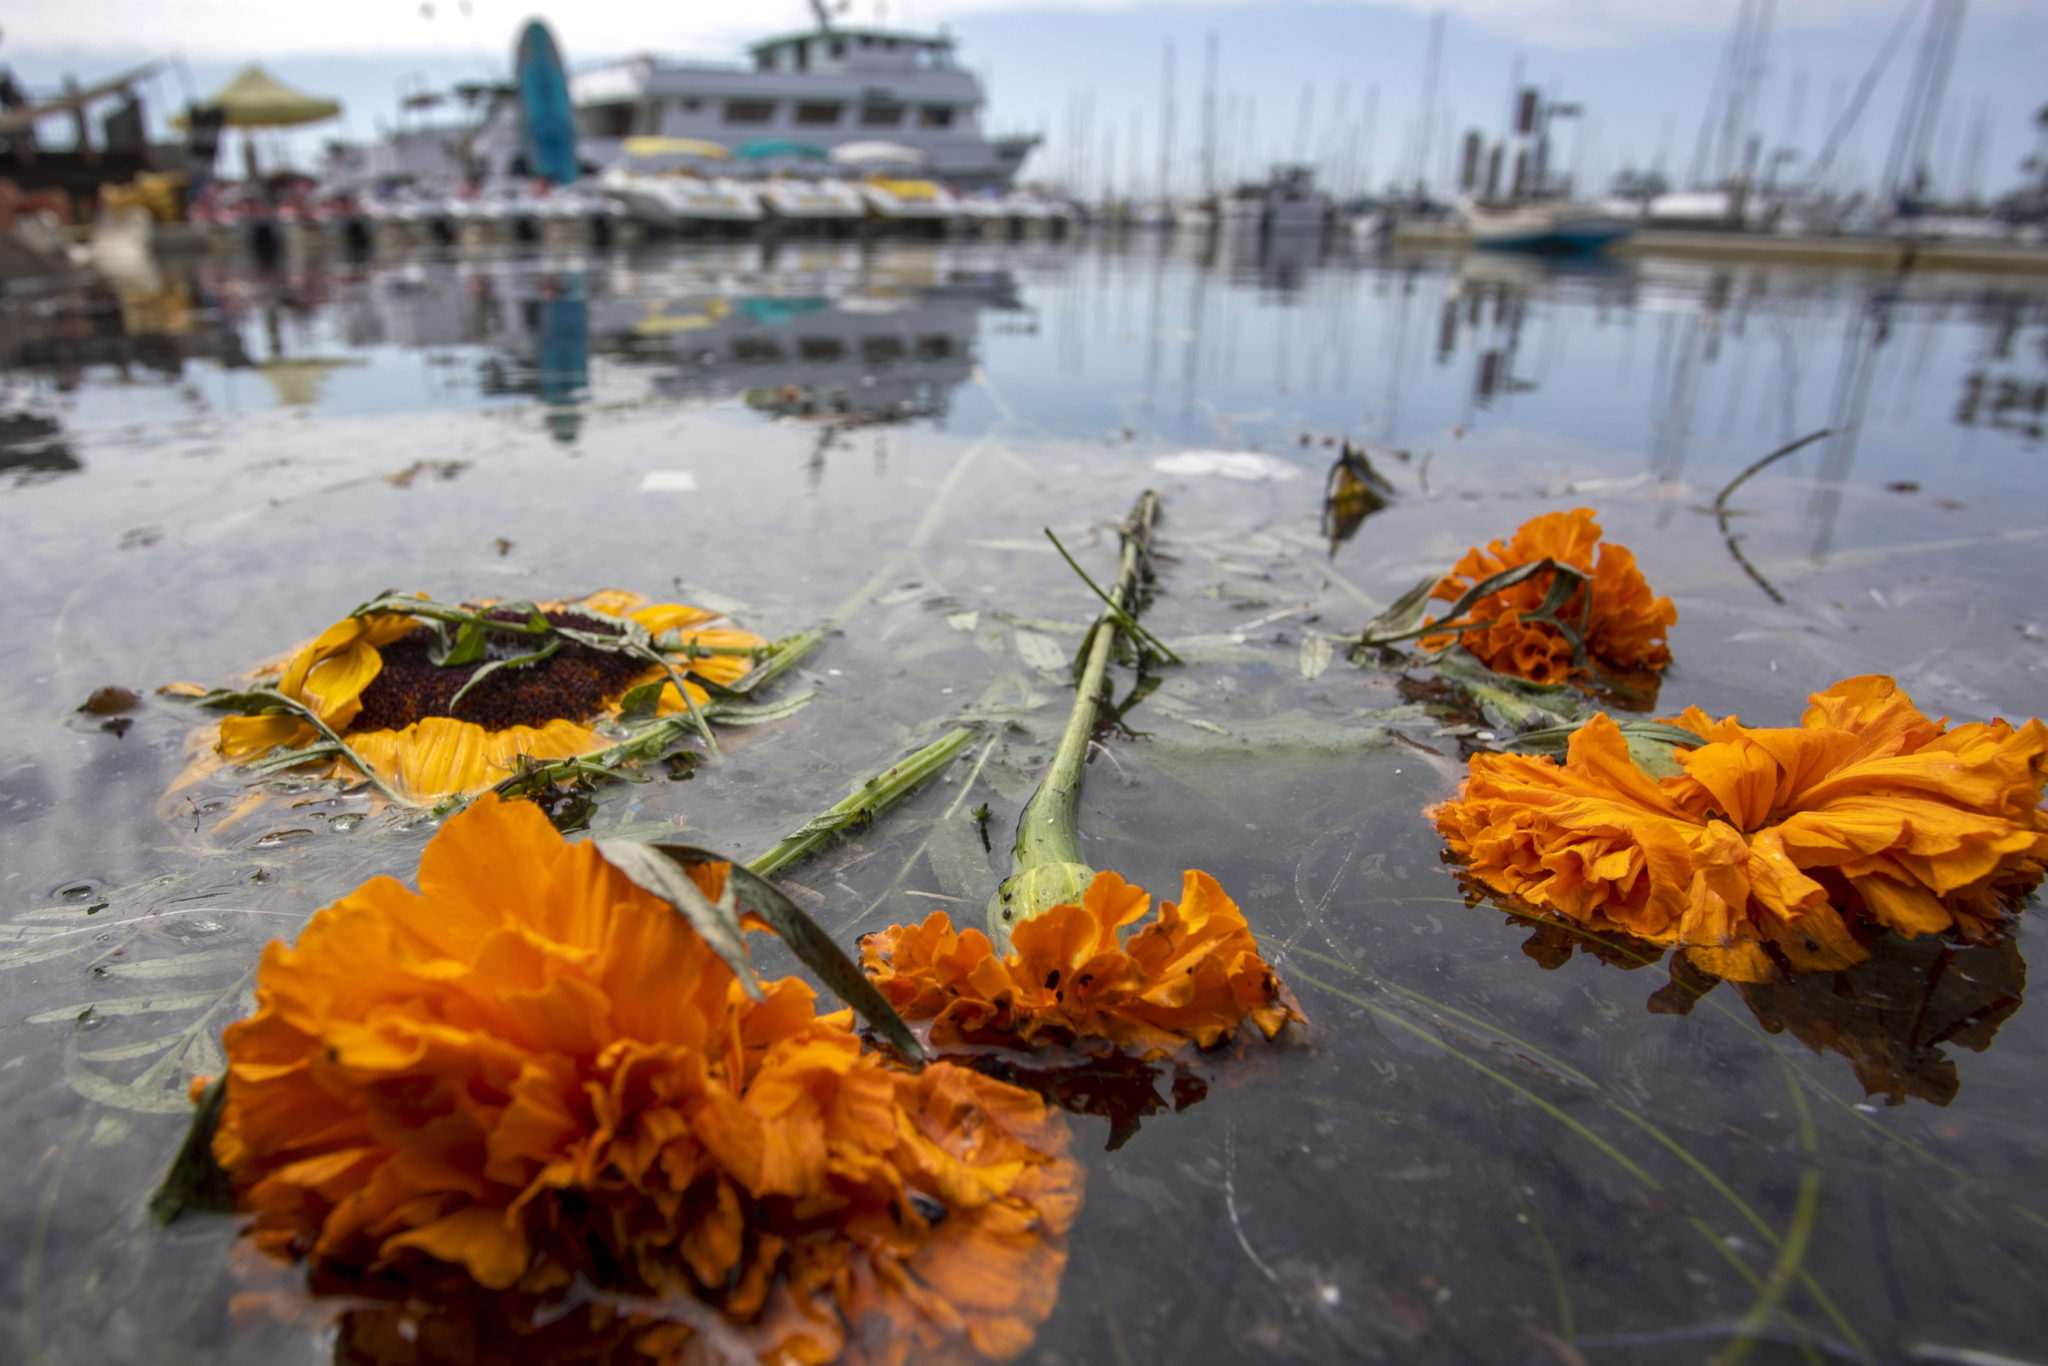 U wybrzeży Kalifornii spłoneła łódź z kilkudziesięcioma pasażerami. Amerykańska straż przybrzeżna poinformowała, że kilka osób udało się uratować, jednak 34 osoby uznaje się za zaginione. fot. DAVID MCNEW, PAP/EPA.